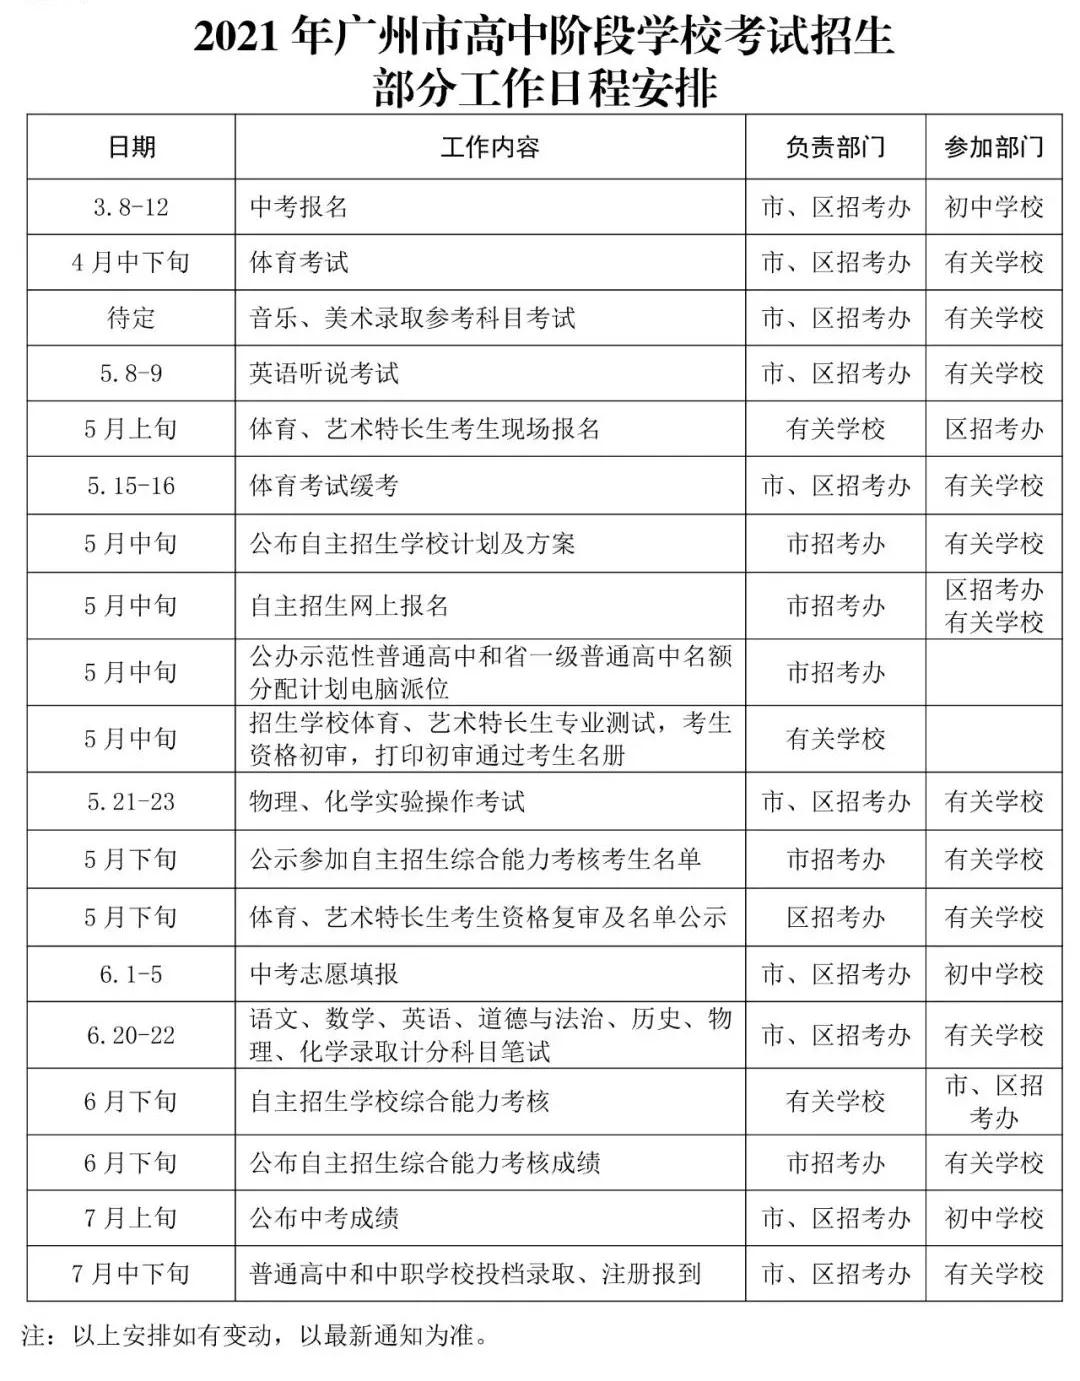 2021年广州市高中阶段学校考试招生日程表公布